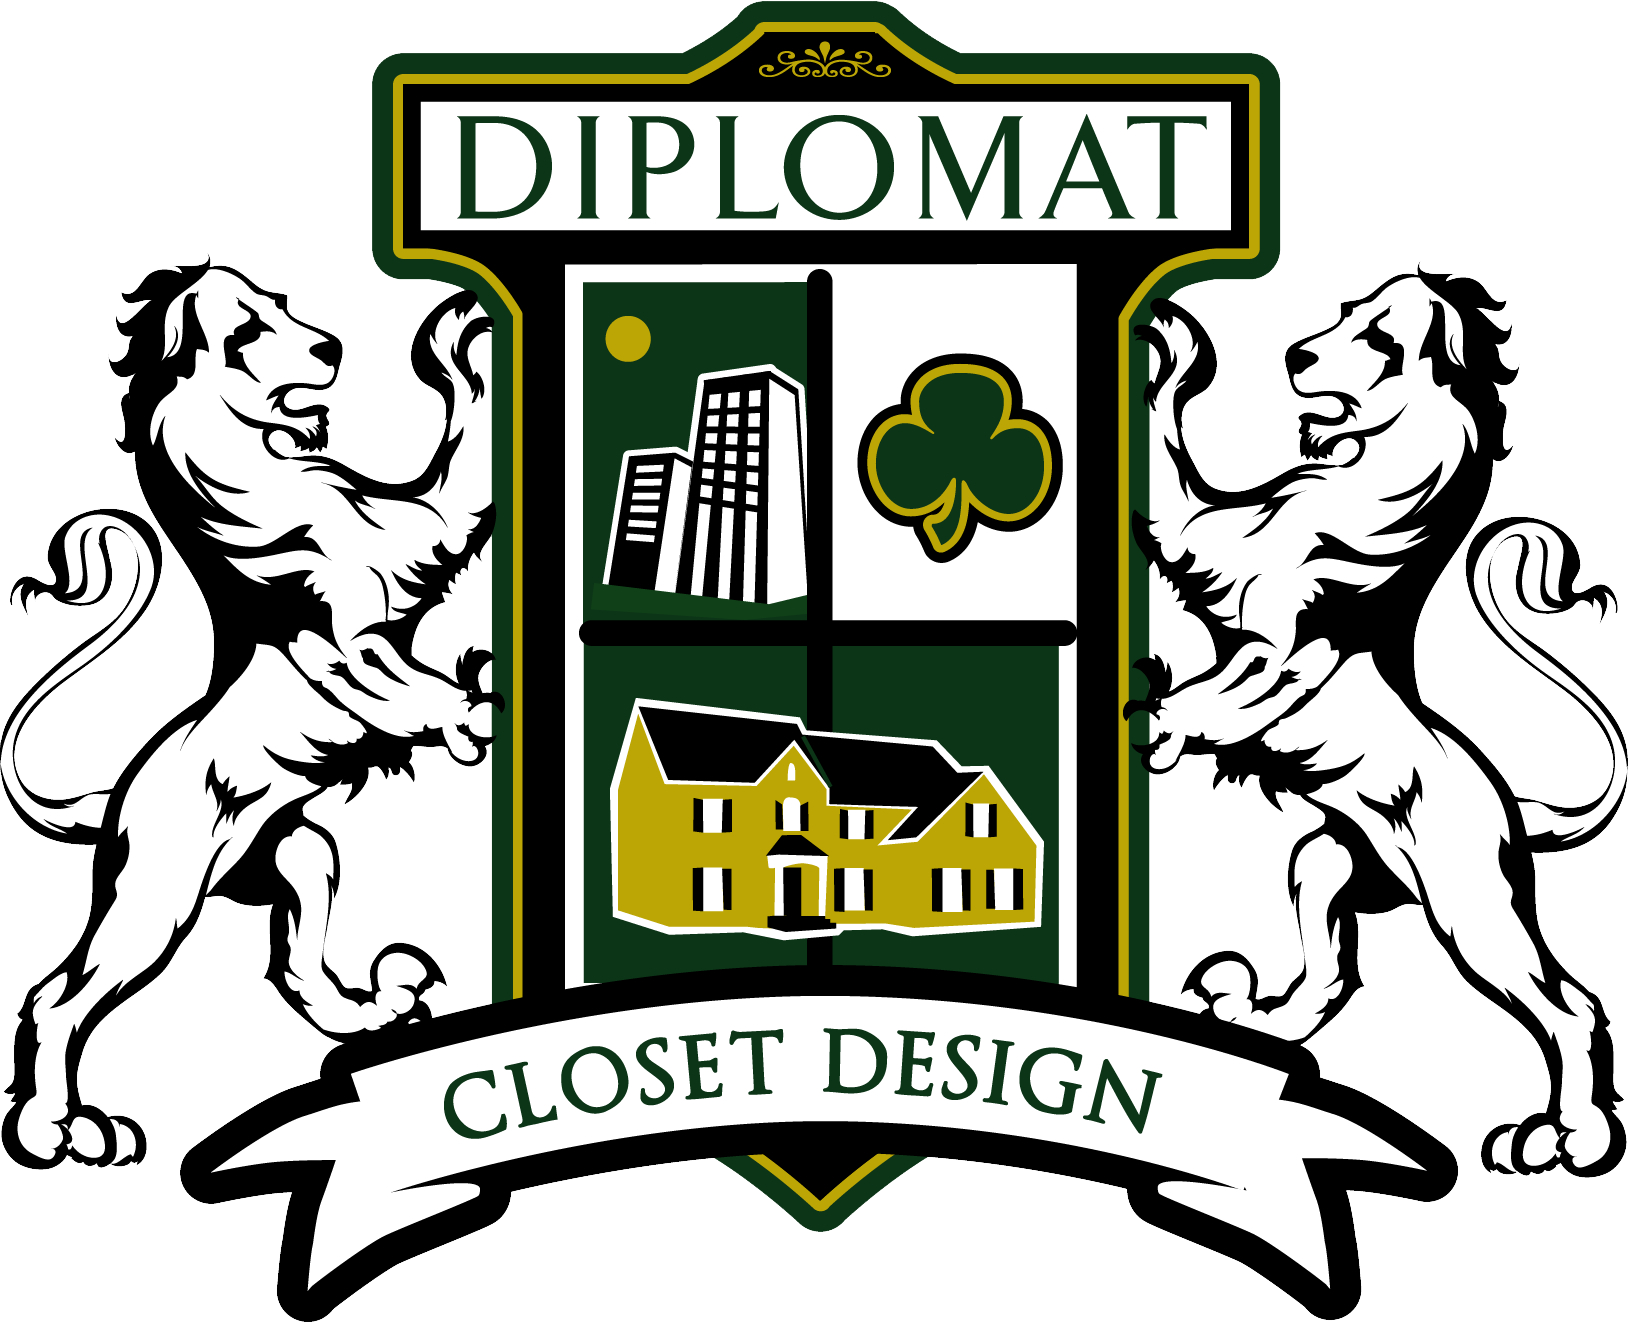 Diplomat Closet Design Logo